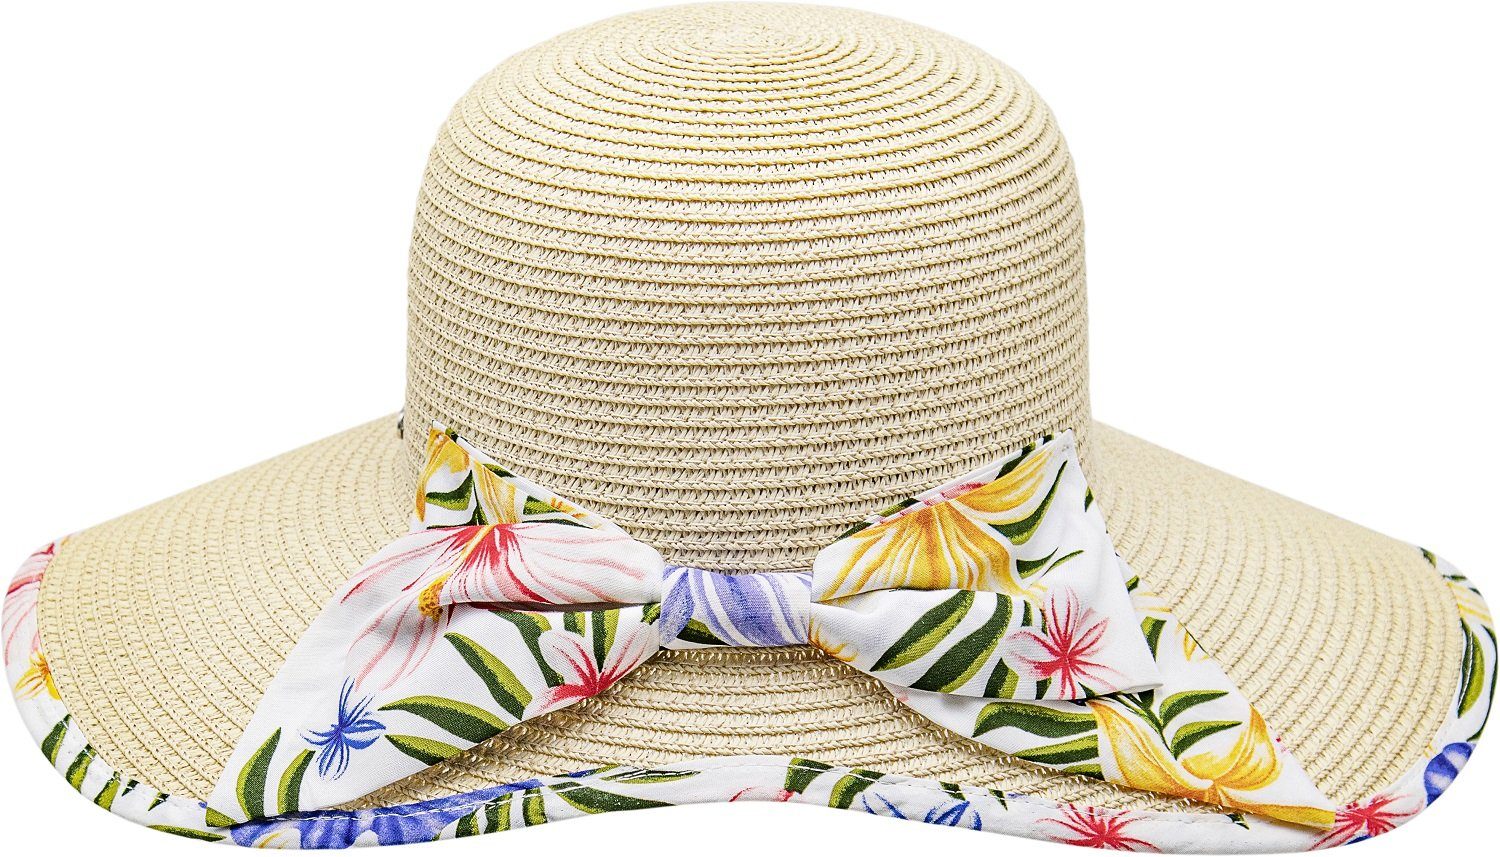 Damen Hüte chillouts Strohhut Long Beach mit Blumenripsband UV-Schutz 50+